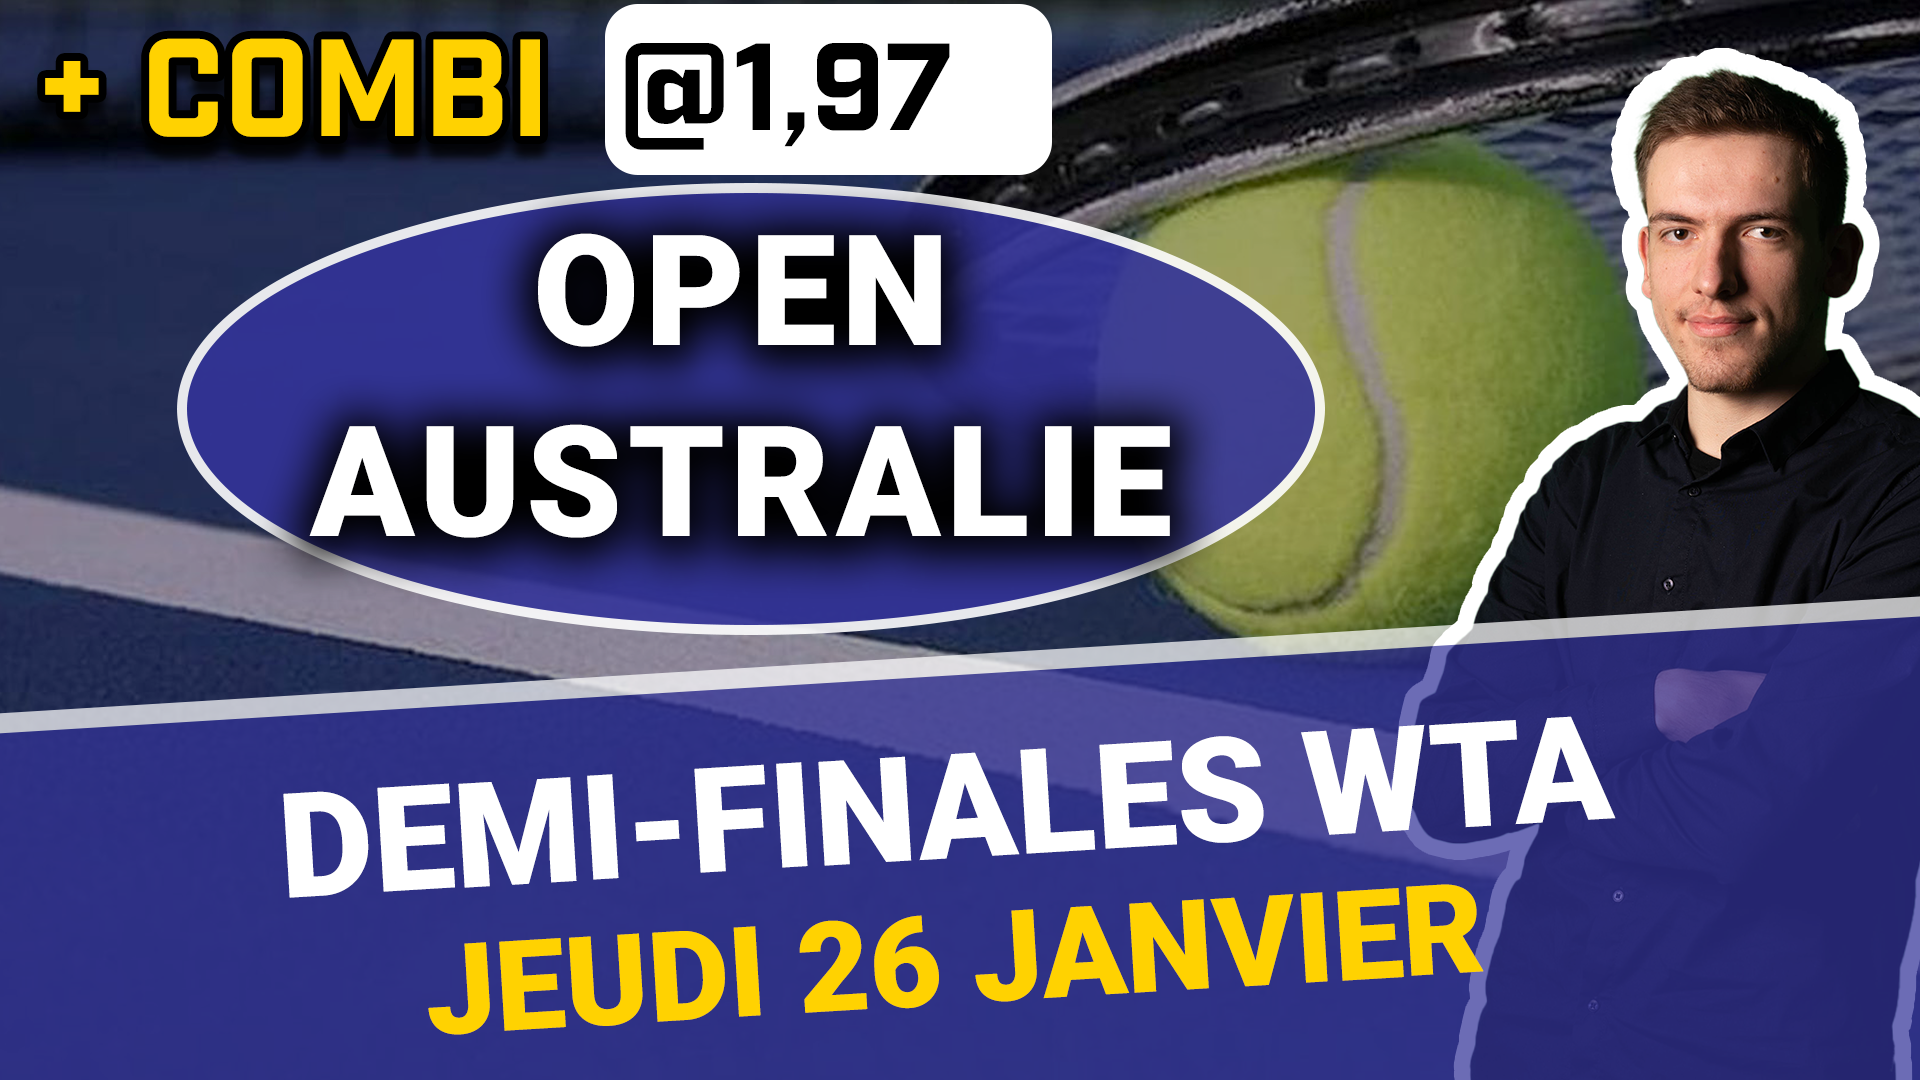 Vignette Demi-finales WTA Open d'Australie jeudi 26 janvier